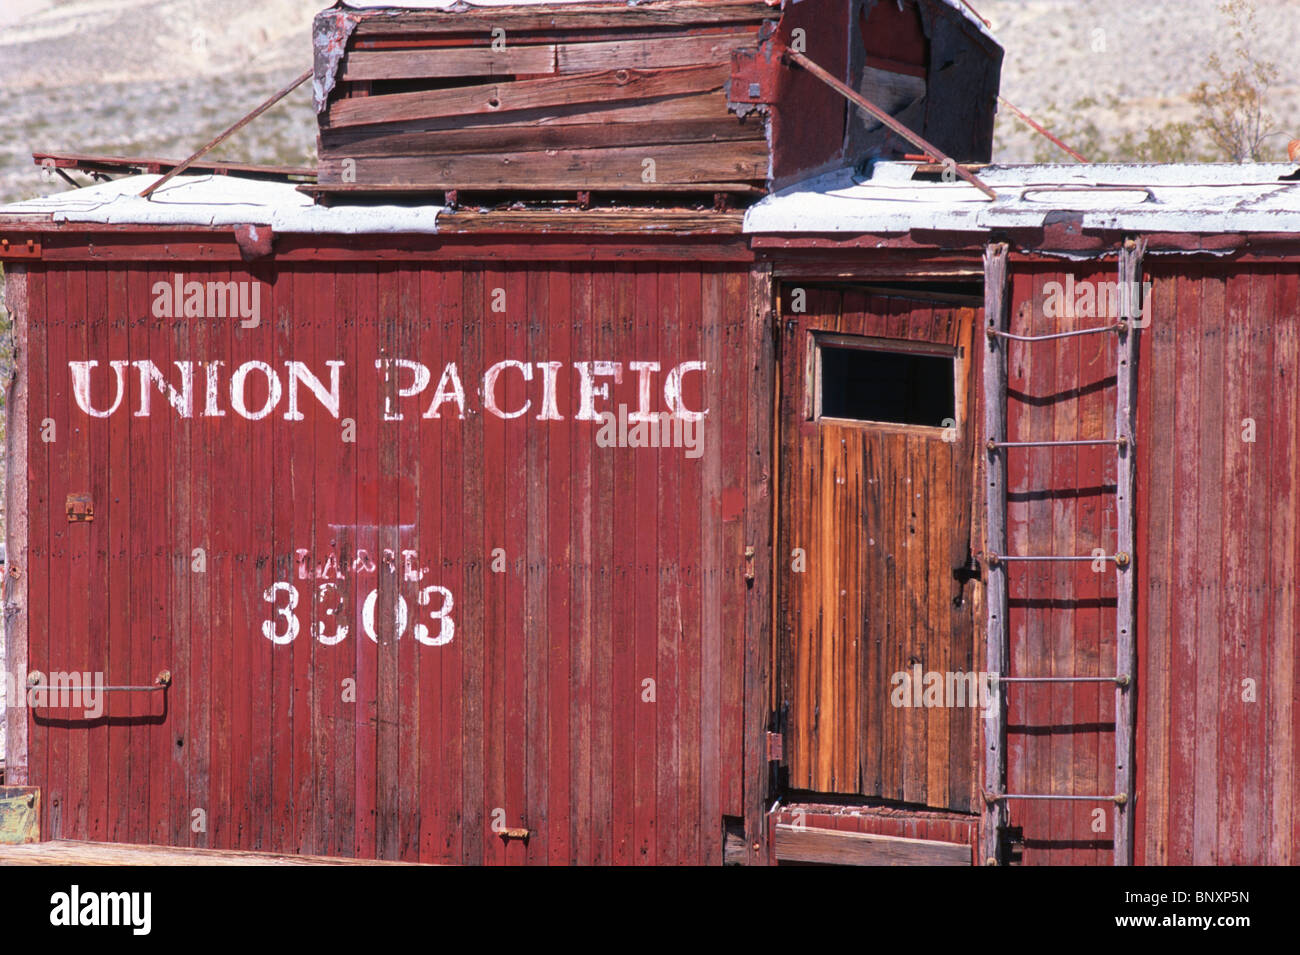 Ancienne Union Pacific rail car dans la ville fantôme de rhyolite, Nevada, USA. Banque D'Images